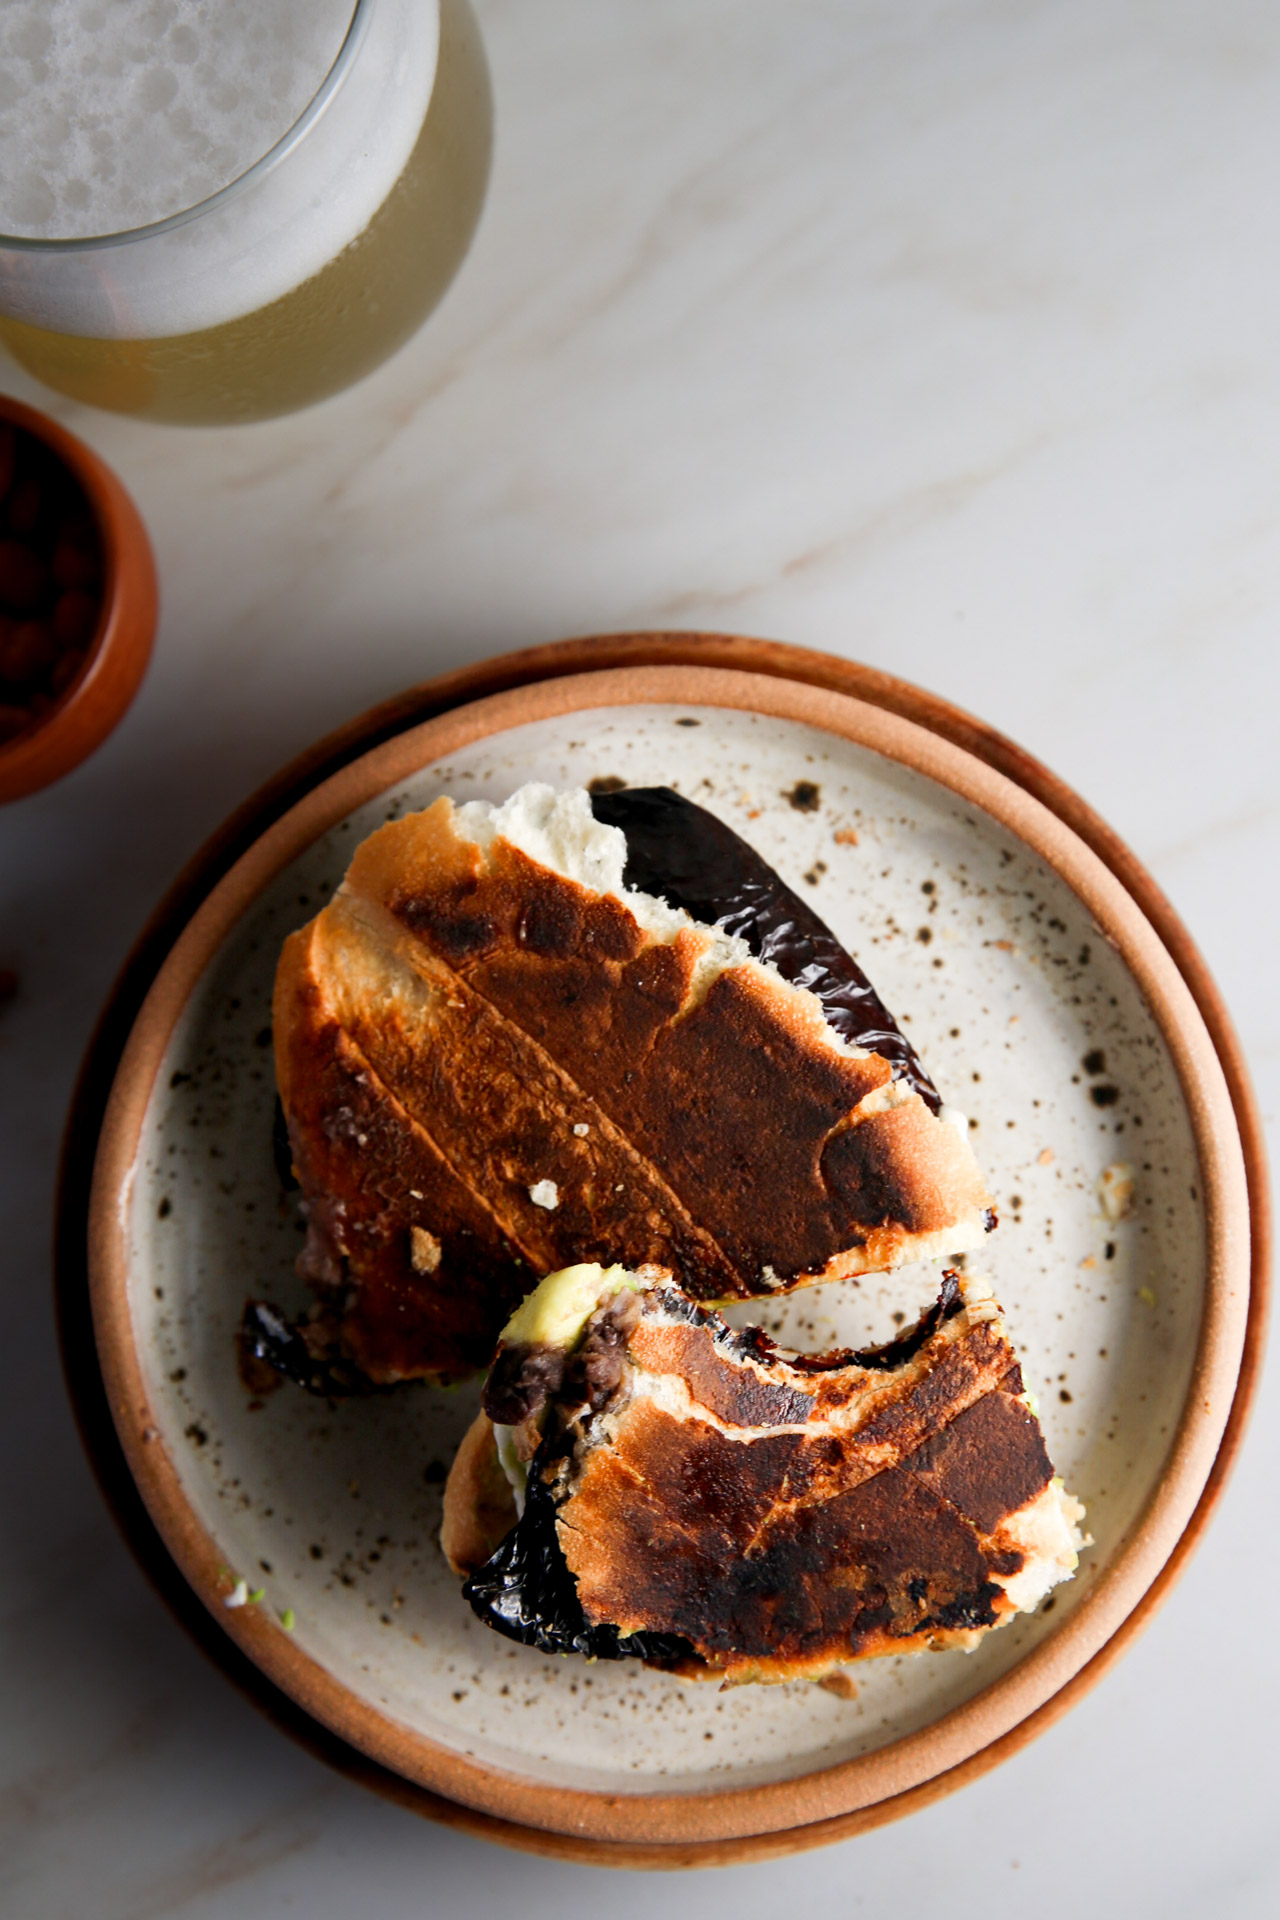 Unas Tortas de chile ancho en un plato junto a un vaso de cerveza, que muestra la cocina tradicional mexicana.